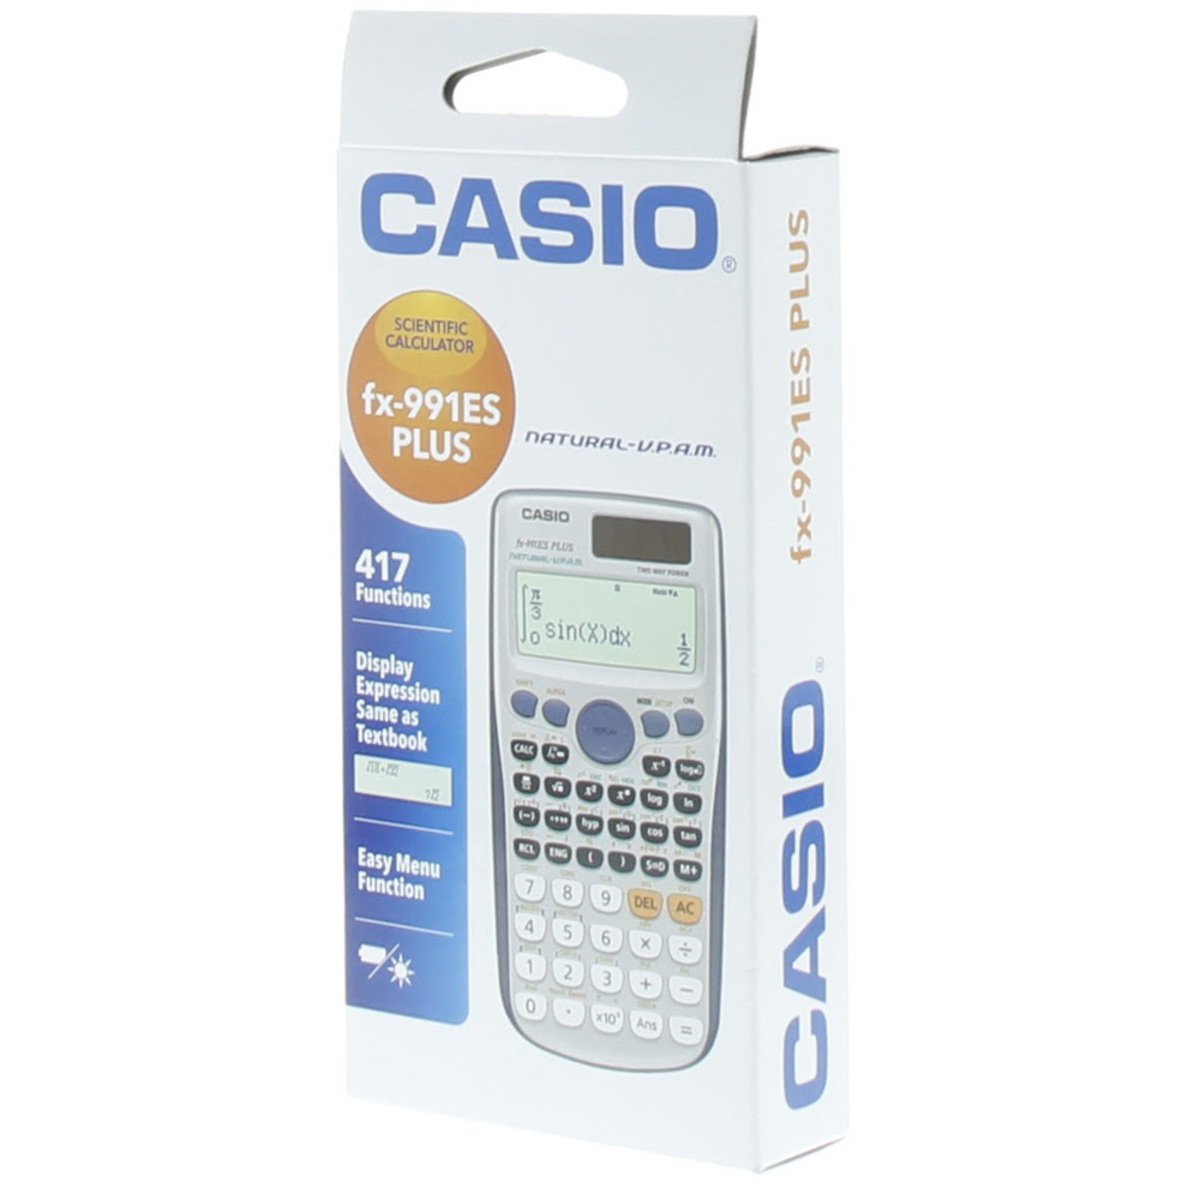 Casio Scientific Calculator FX-991ES Plus Online at Best Price ...